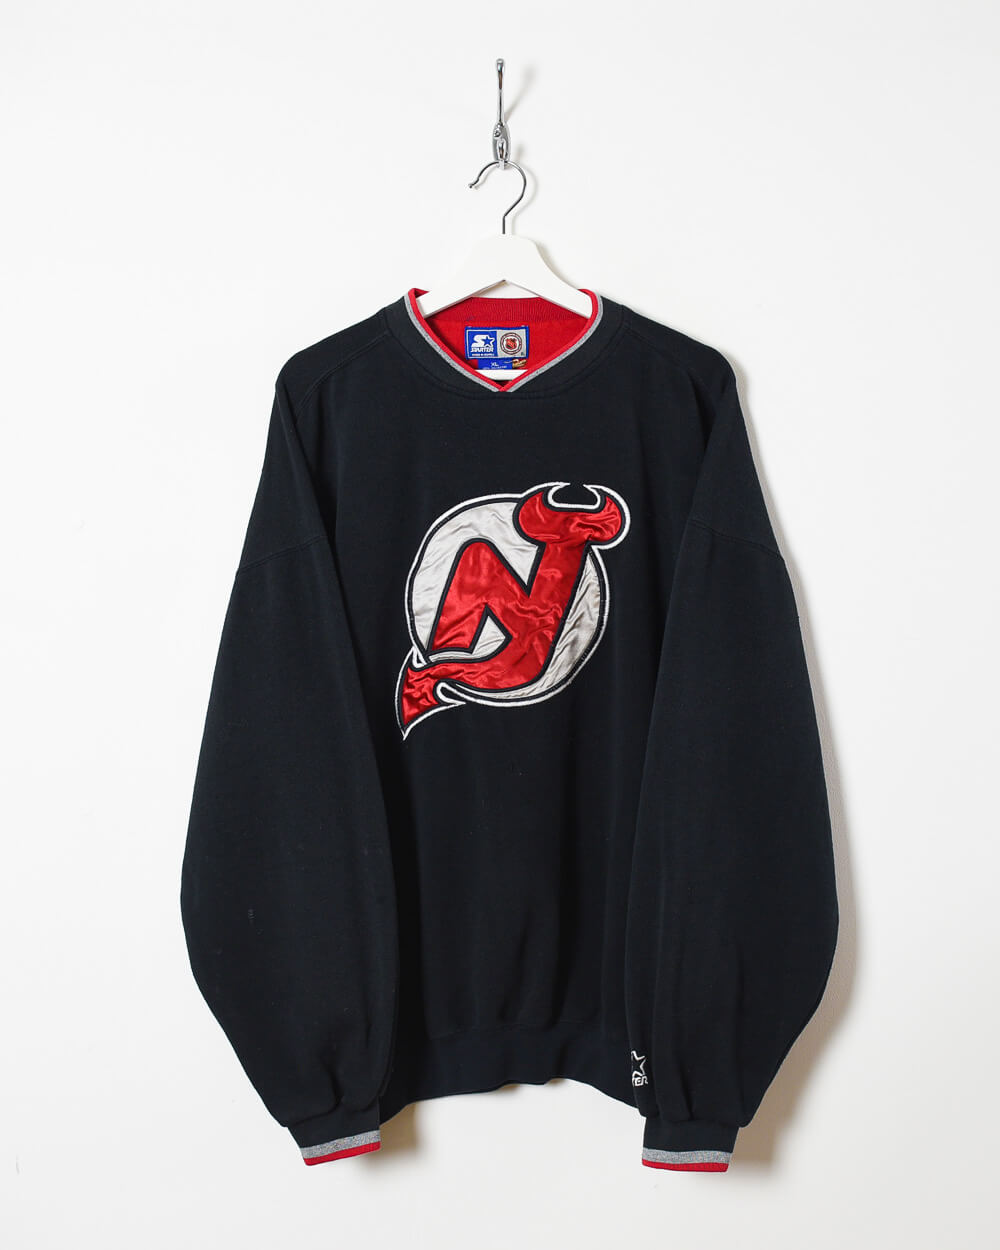 Vintage Starter - New Jersey Devils Hockey Jersey 1990s X-Large